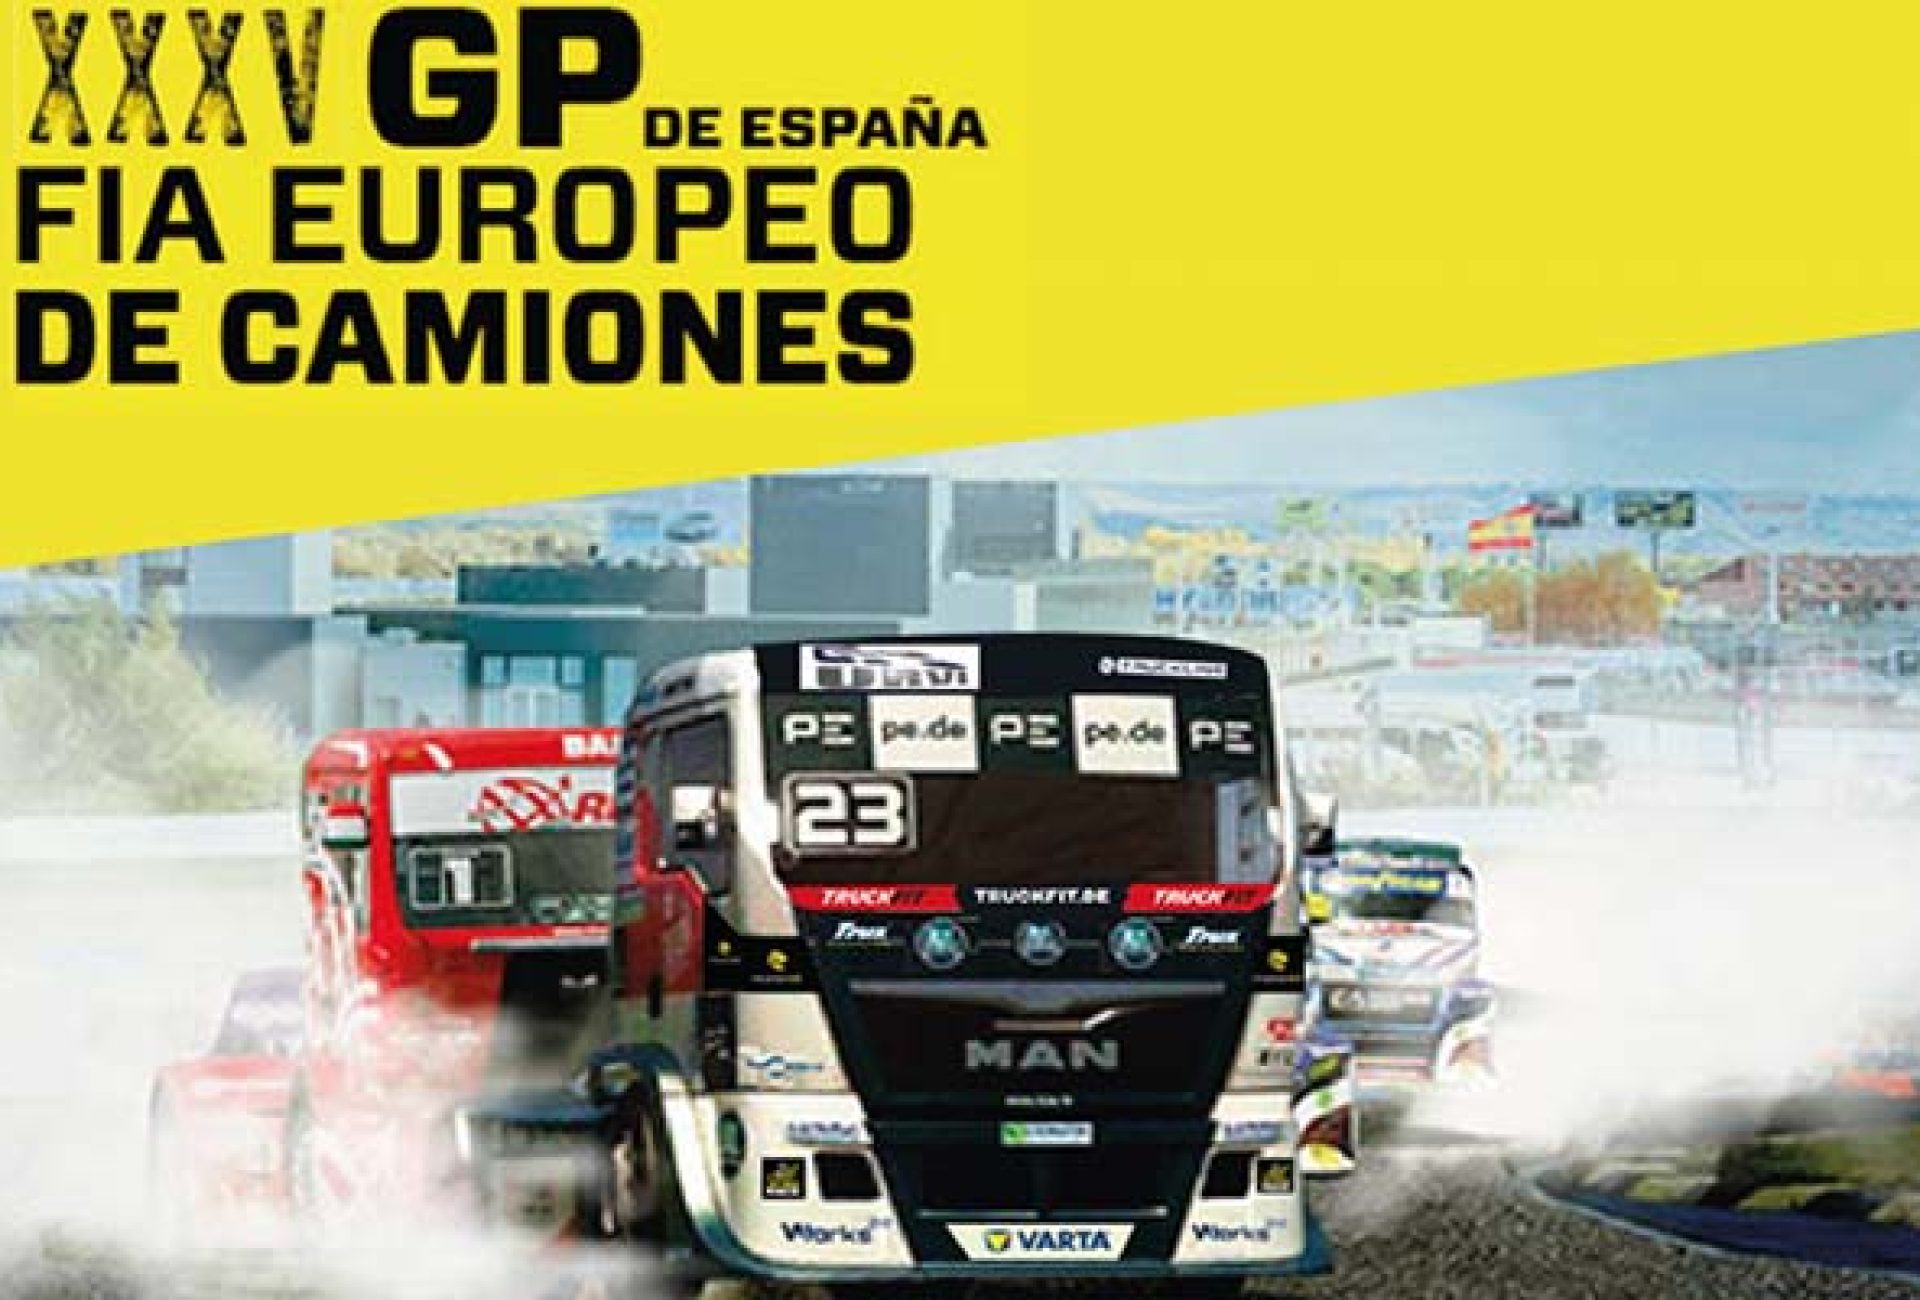 Nuestro-Cliente-URVI-(Unión-de-Recambistas-de-Vehículo-Insdustrial)-estará-presente-en-el-XXXV-GP-de-España-Europeo-de-Camiones.